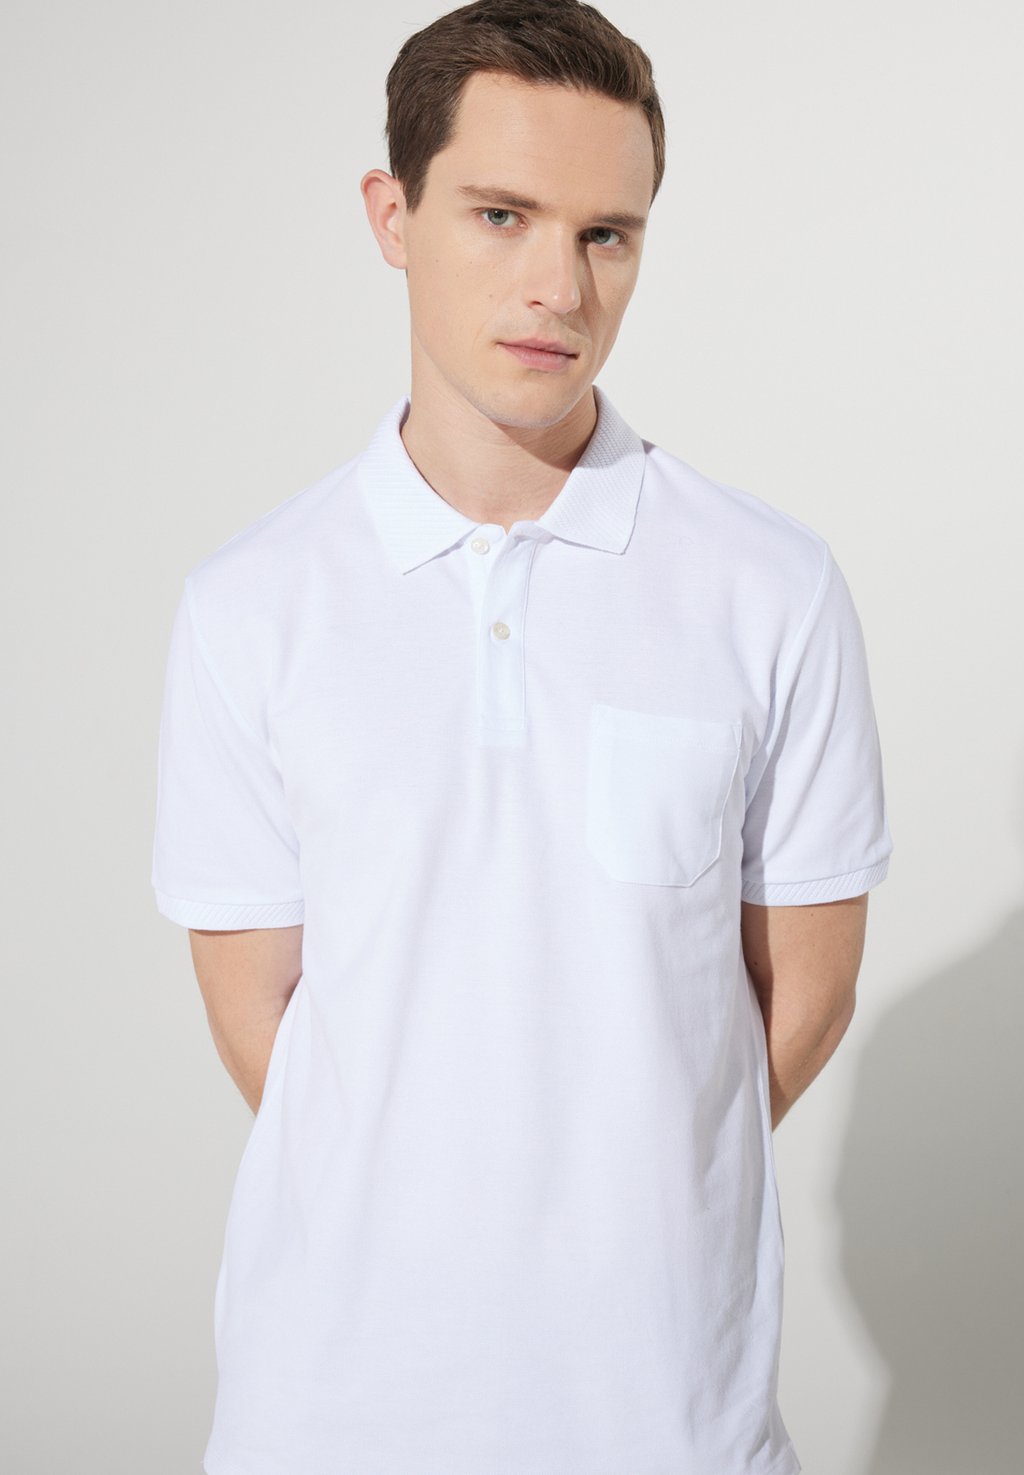 Рубашка поло COMFORT FIT BASIC AC&CO / ALTINYILDIZ CLASSICS, цвет Comfort Fit Basic Comfort Polo Shirt цена и фото